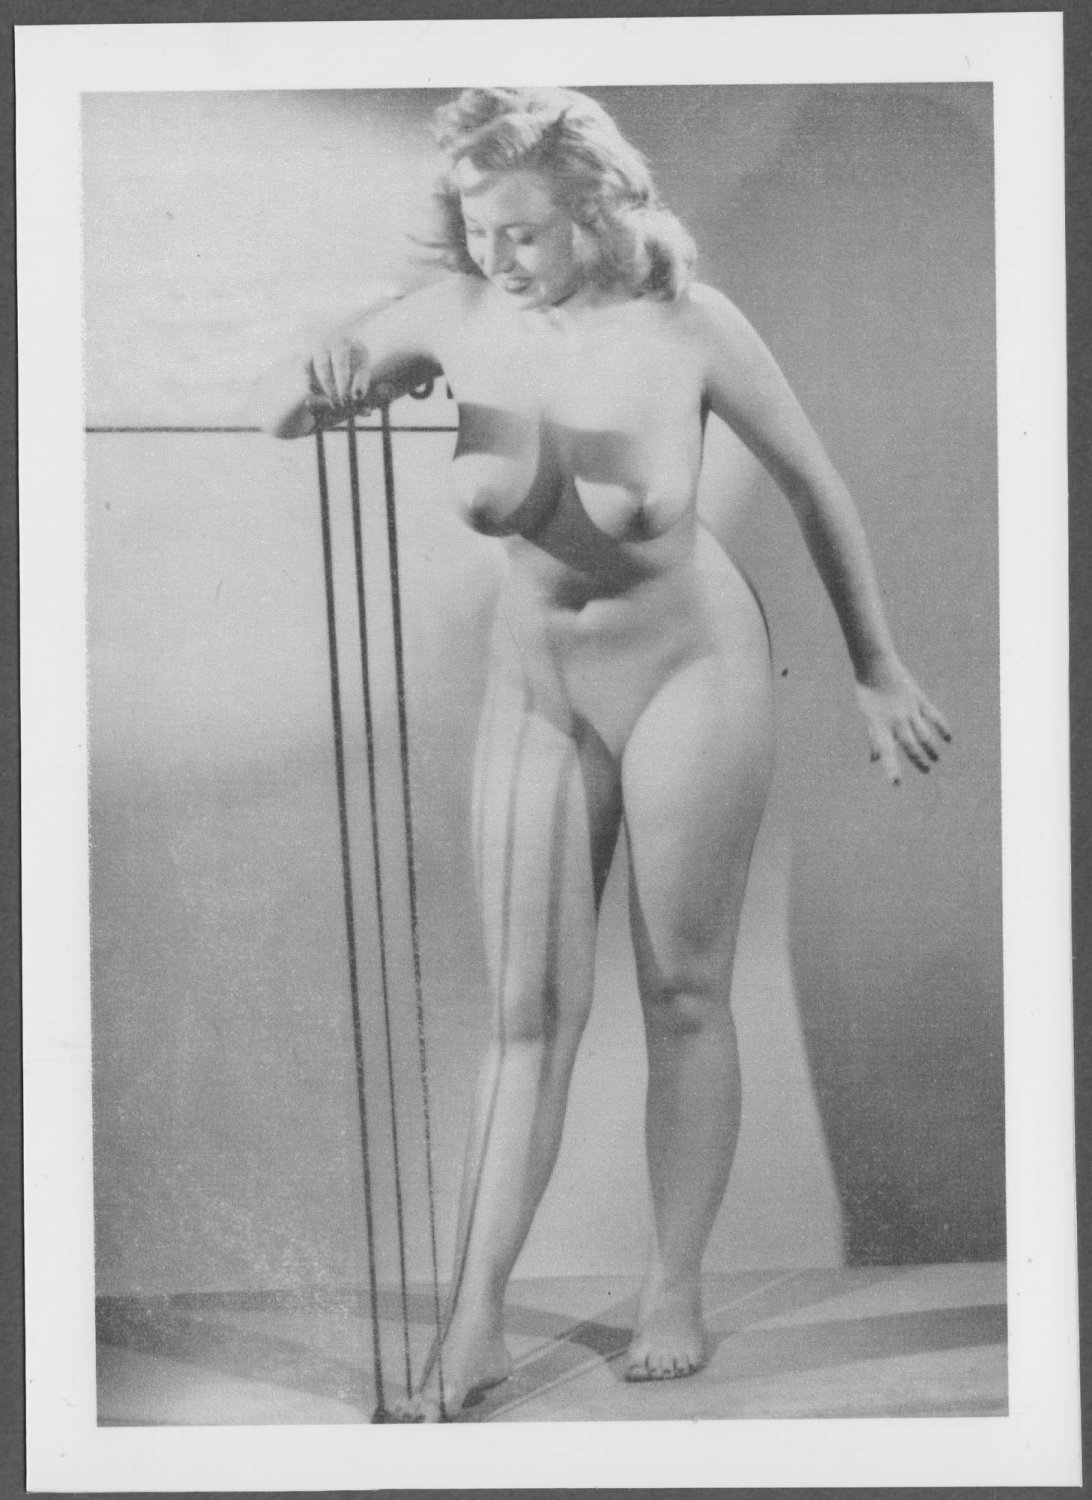 Dagmar topless nude new reprint 5X7 #23.